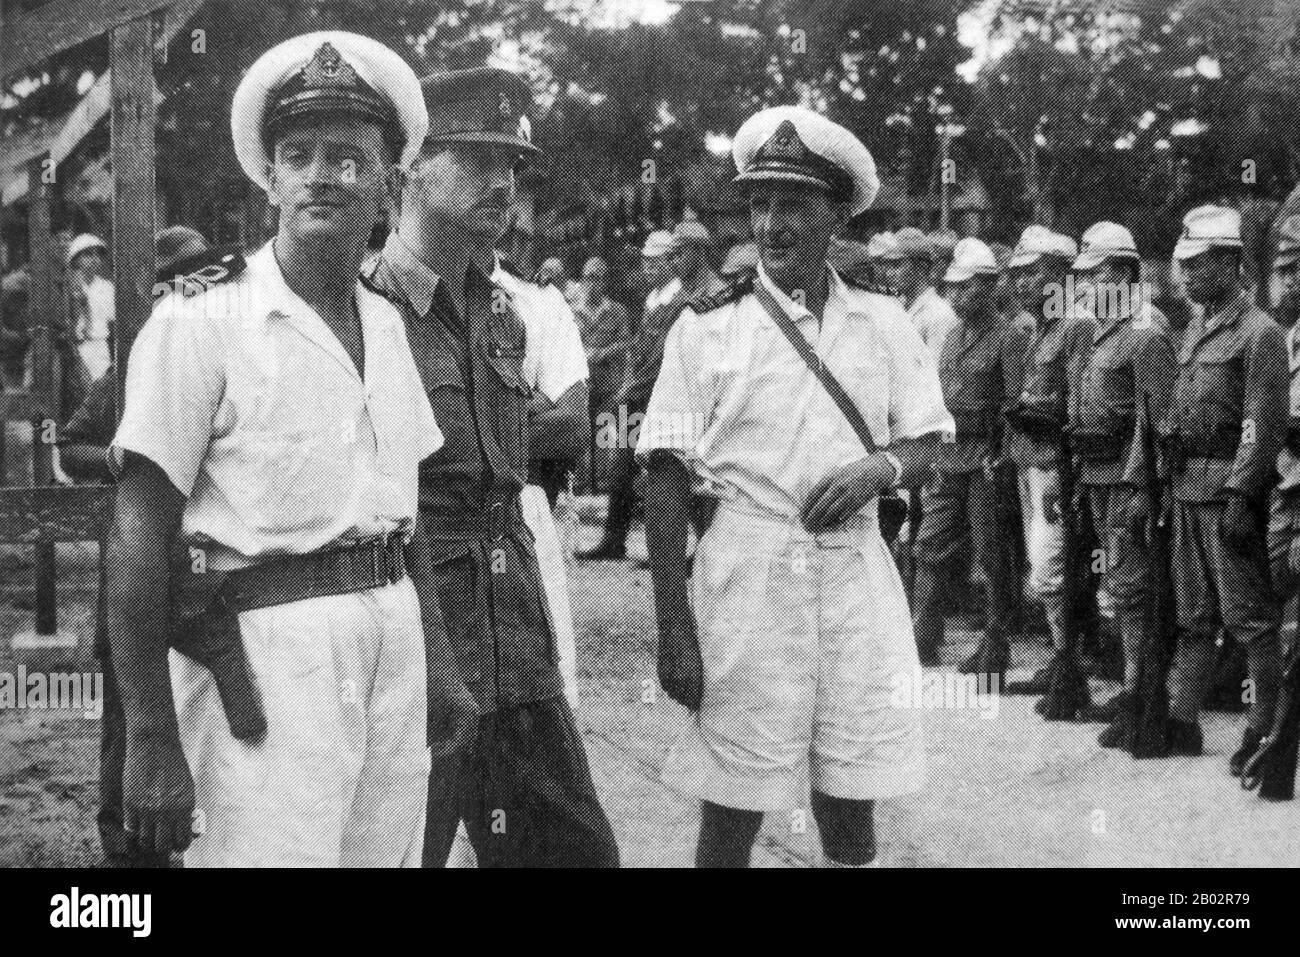 En septembre 1945, 20 000 soldats britanniques de la vingtième Division indienne occupaient Saigon sous le commandement du général Sir Douglas David Gracey. Lors de la Conférence de Potsdam en juillet 1945, les Alliés avaient convenu que la Grande-Bretagne prenait le contrôle du Vietnam au sud du XVIe parallèle (alors partie de l'Indochine française) des occupants japonais. Pendant ce temps, Ho Chi Minh a proclamé l'indépendance vietnamienne du gouvernement français et d'importantes manifestations pro-indépendantes et anti-françaises ont eu lieu à Saigon. Ho Chi Minh était le chef du Viet Minh communiste. Les Français, soucieux de conserver leur colonie, ont persuadé Grace Banque D'Images